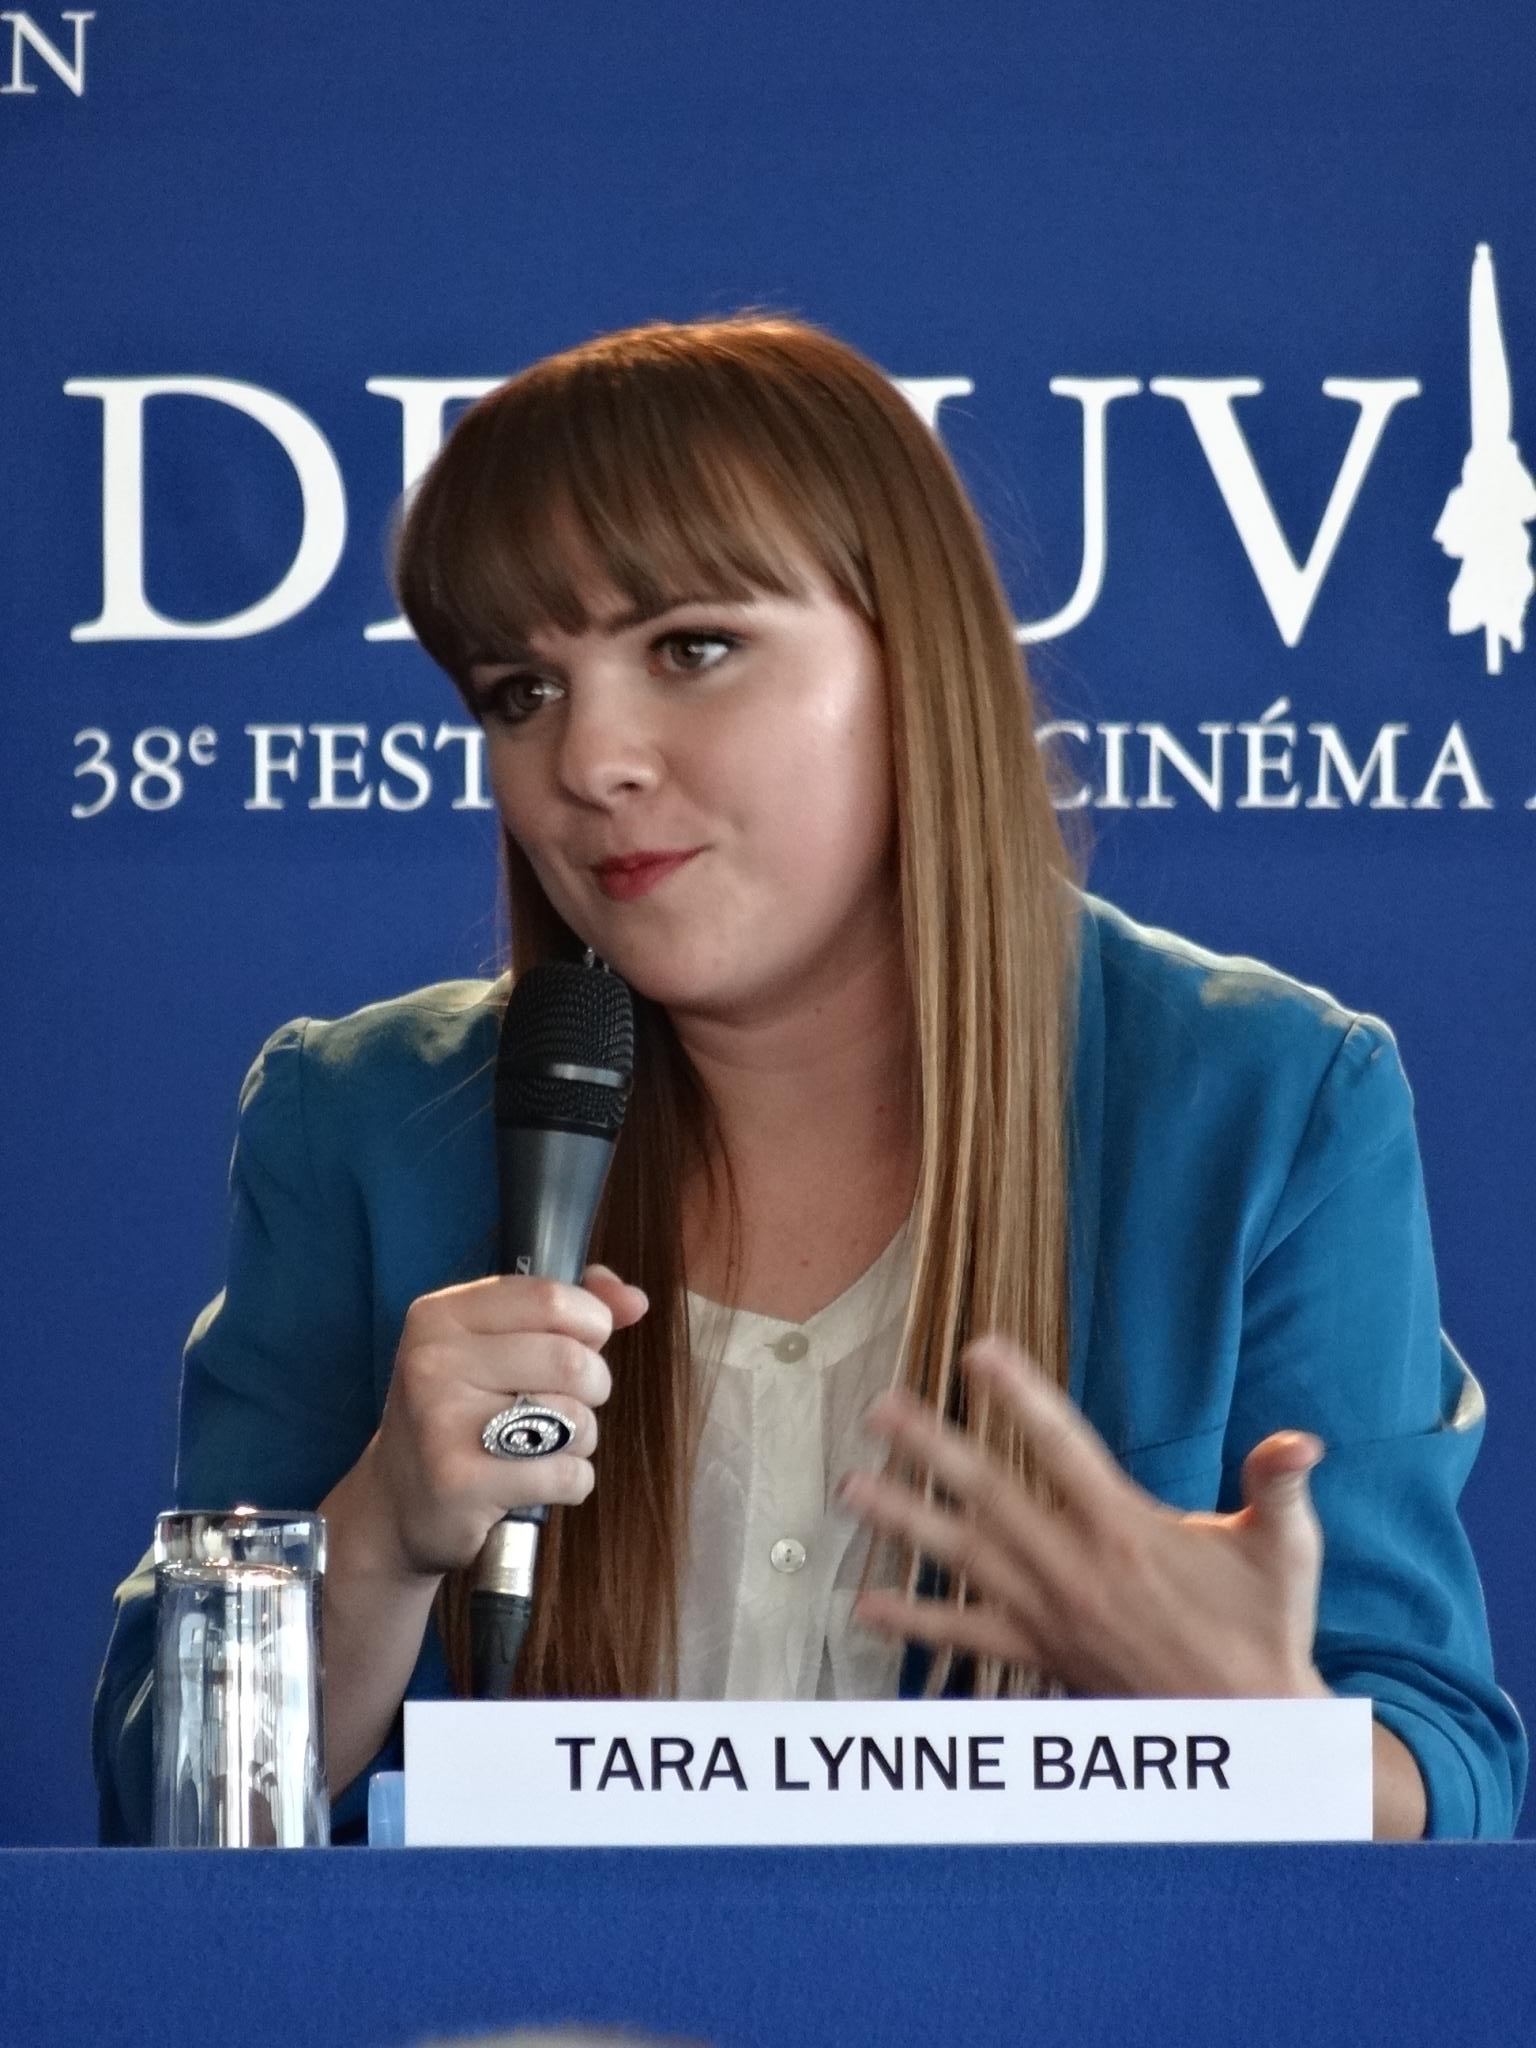 tara-lynne-barr-movies